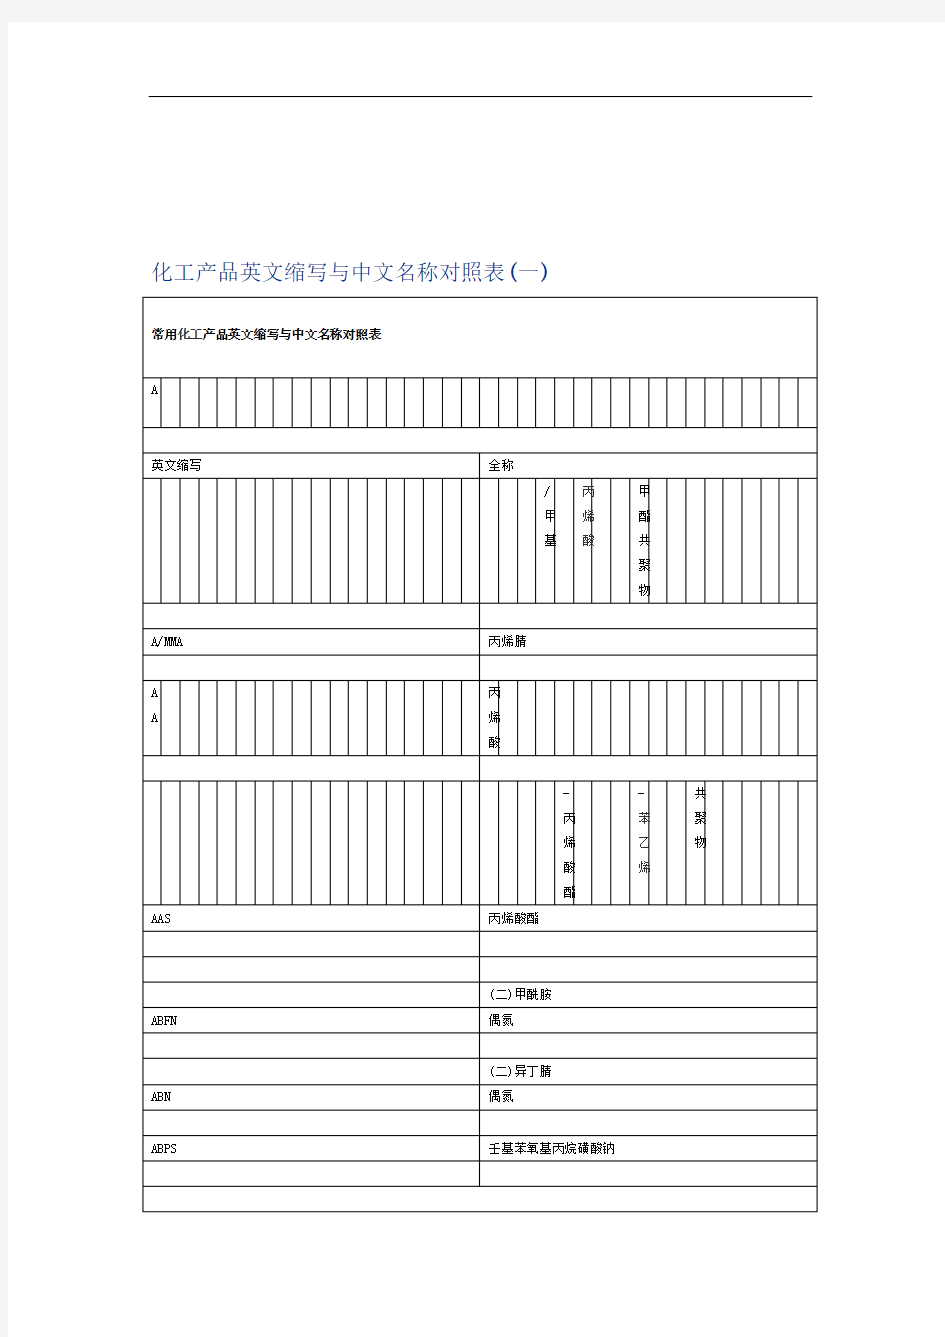 化工产品英文缩写与中文名称对照表